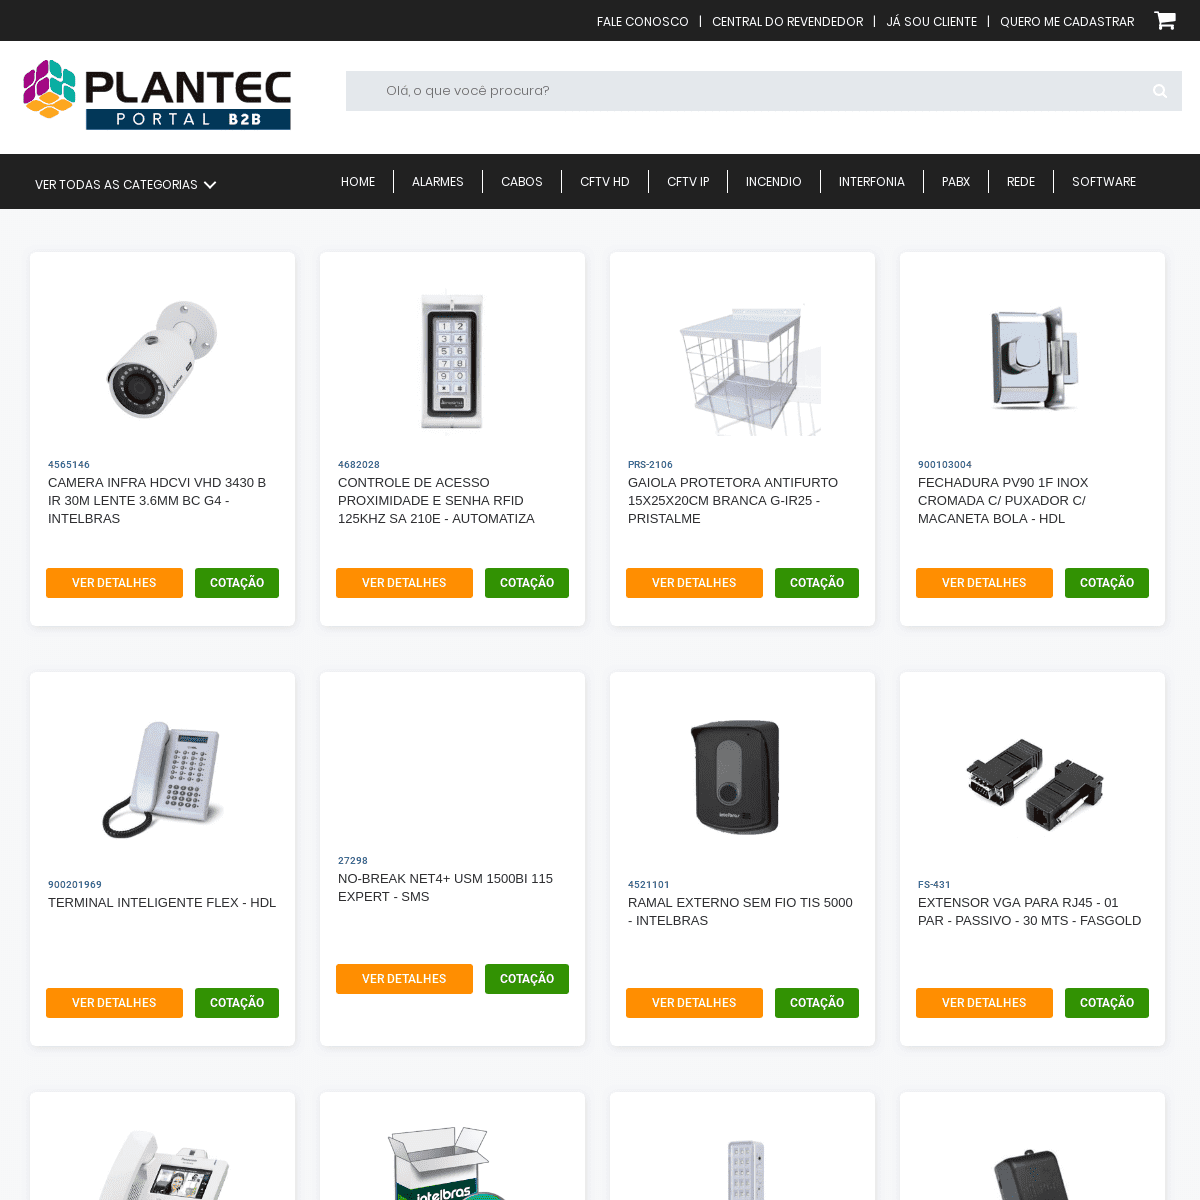 A complete backup of plantecb2b.com.br